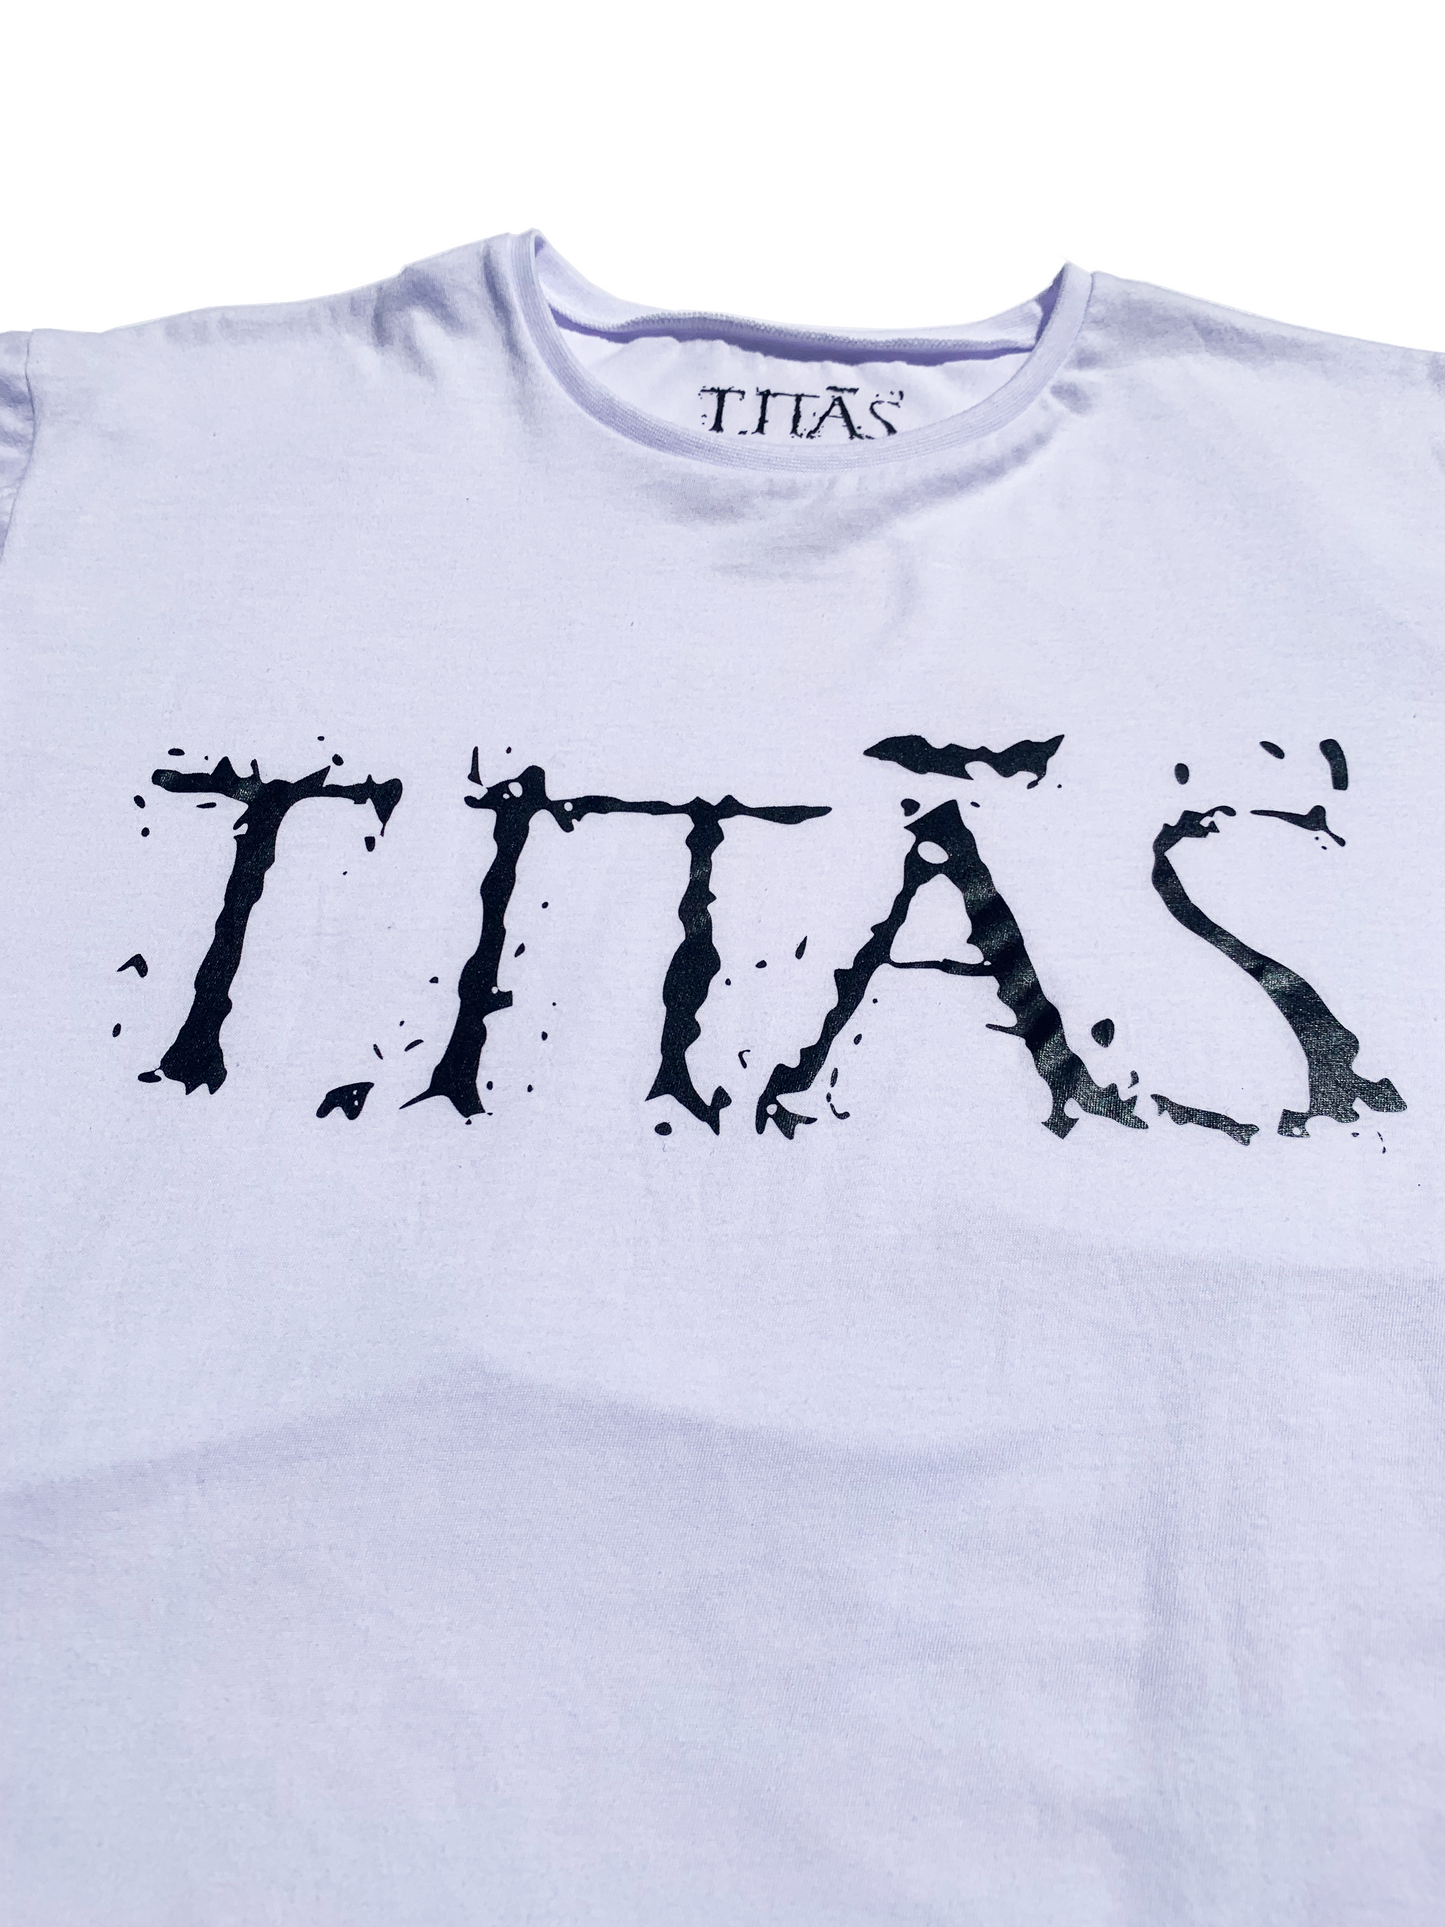 Camiseta Titãs - cropped - Branca